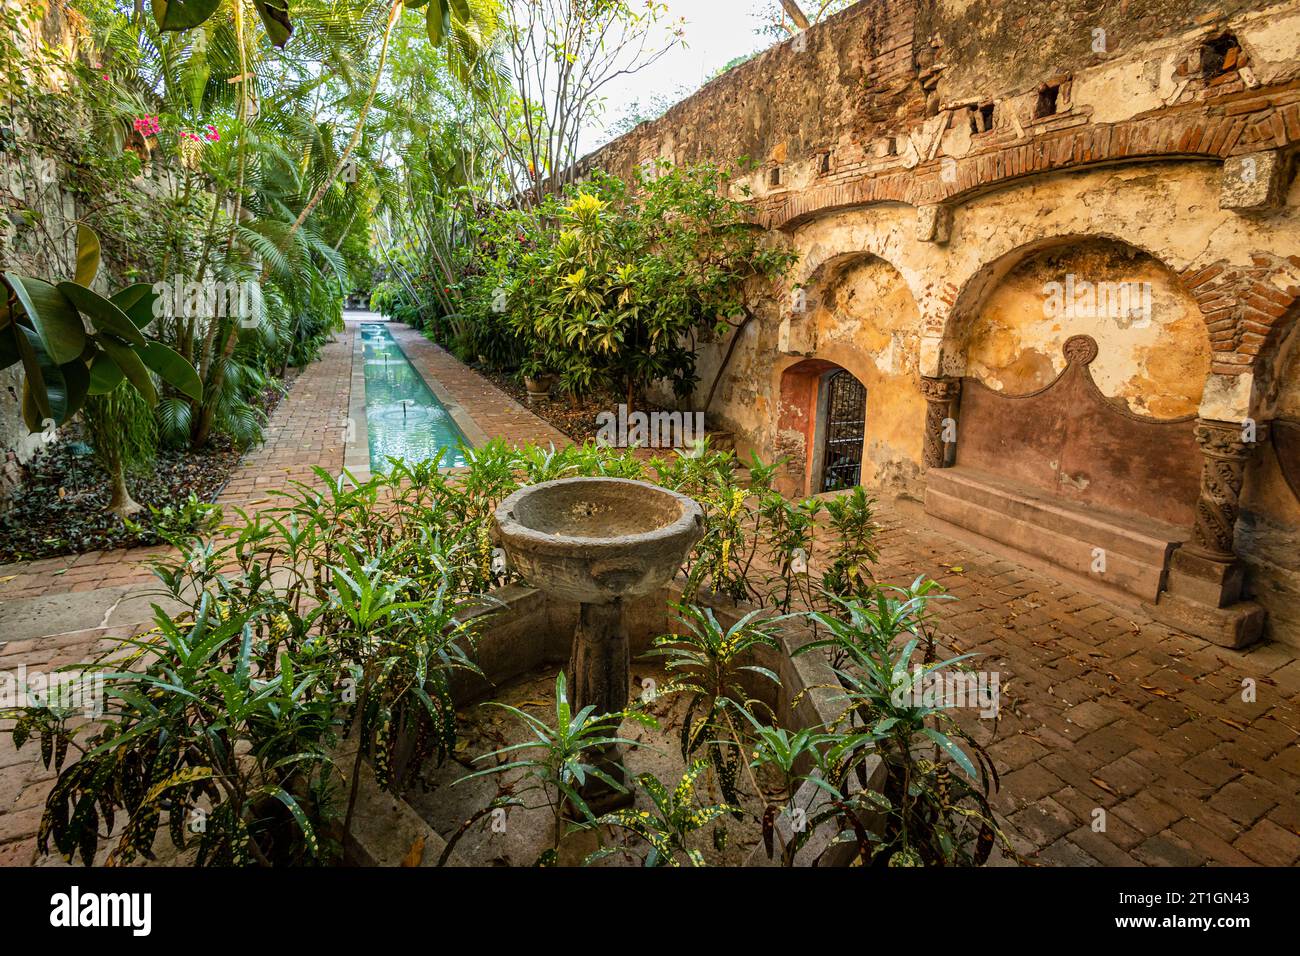 Reflecting pool of the colonial Hacienda San Gabriel de las Palmas, Morelos, Mexico. Stock Photo